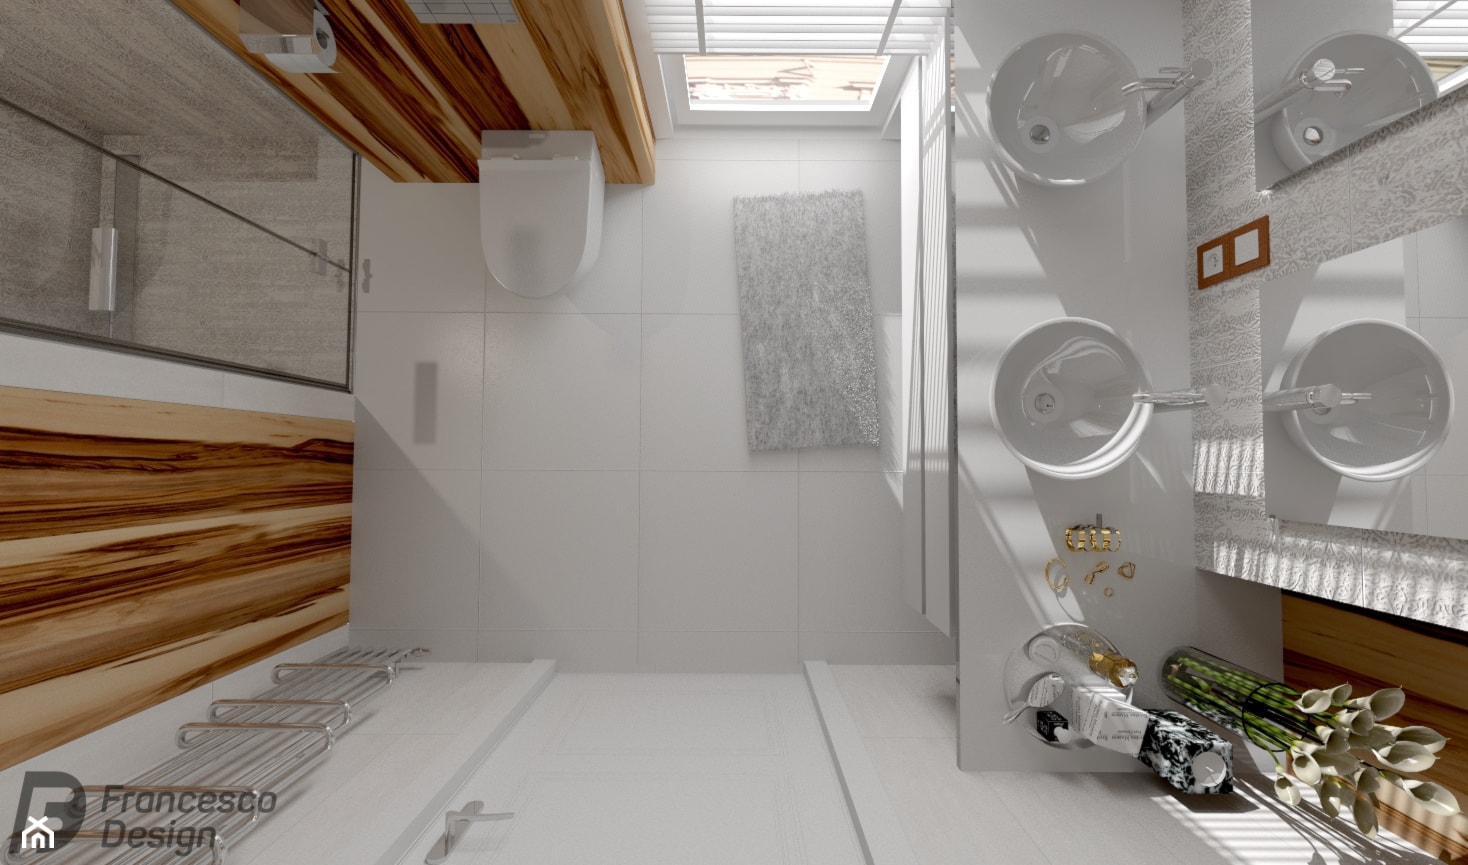 Mała łazienka w bieli i oryginalnym drewnie - zdjęcie od FRANCESCO DESIGN - Homebook